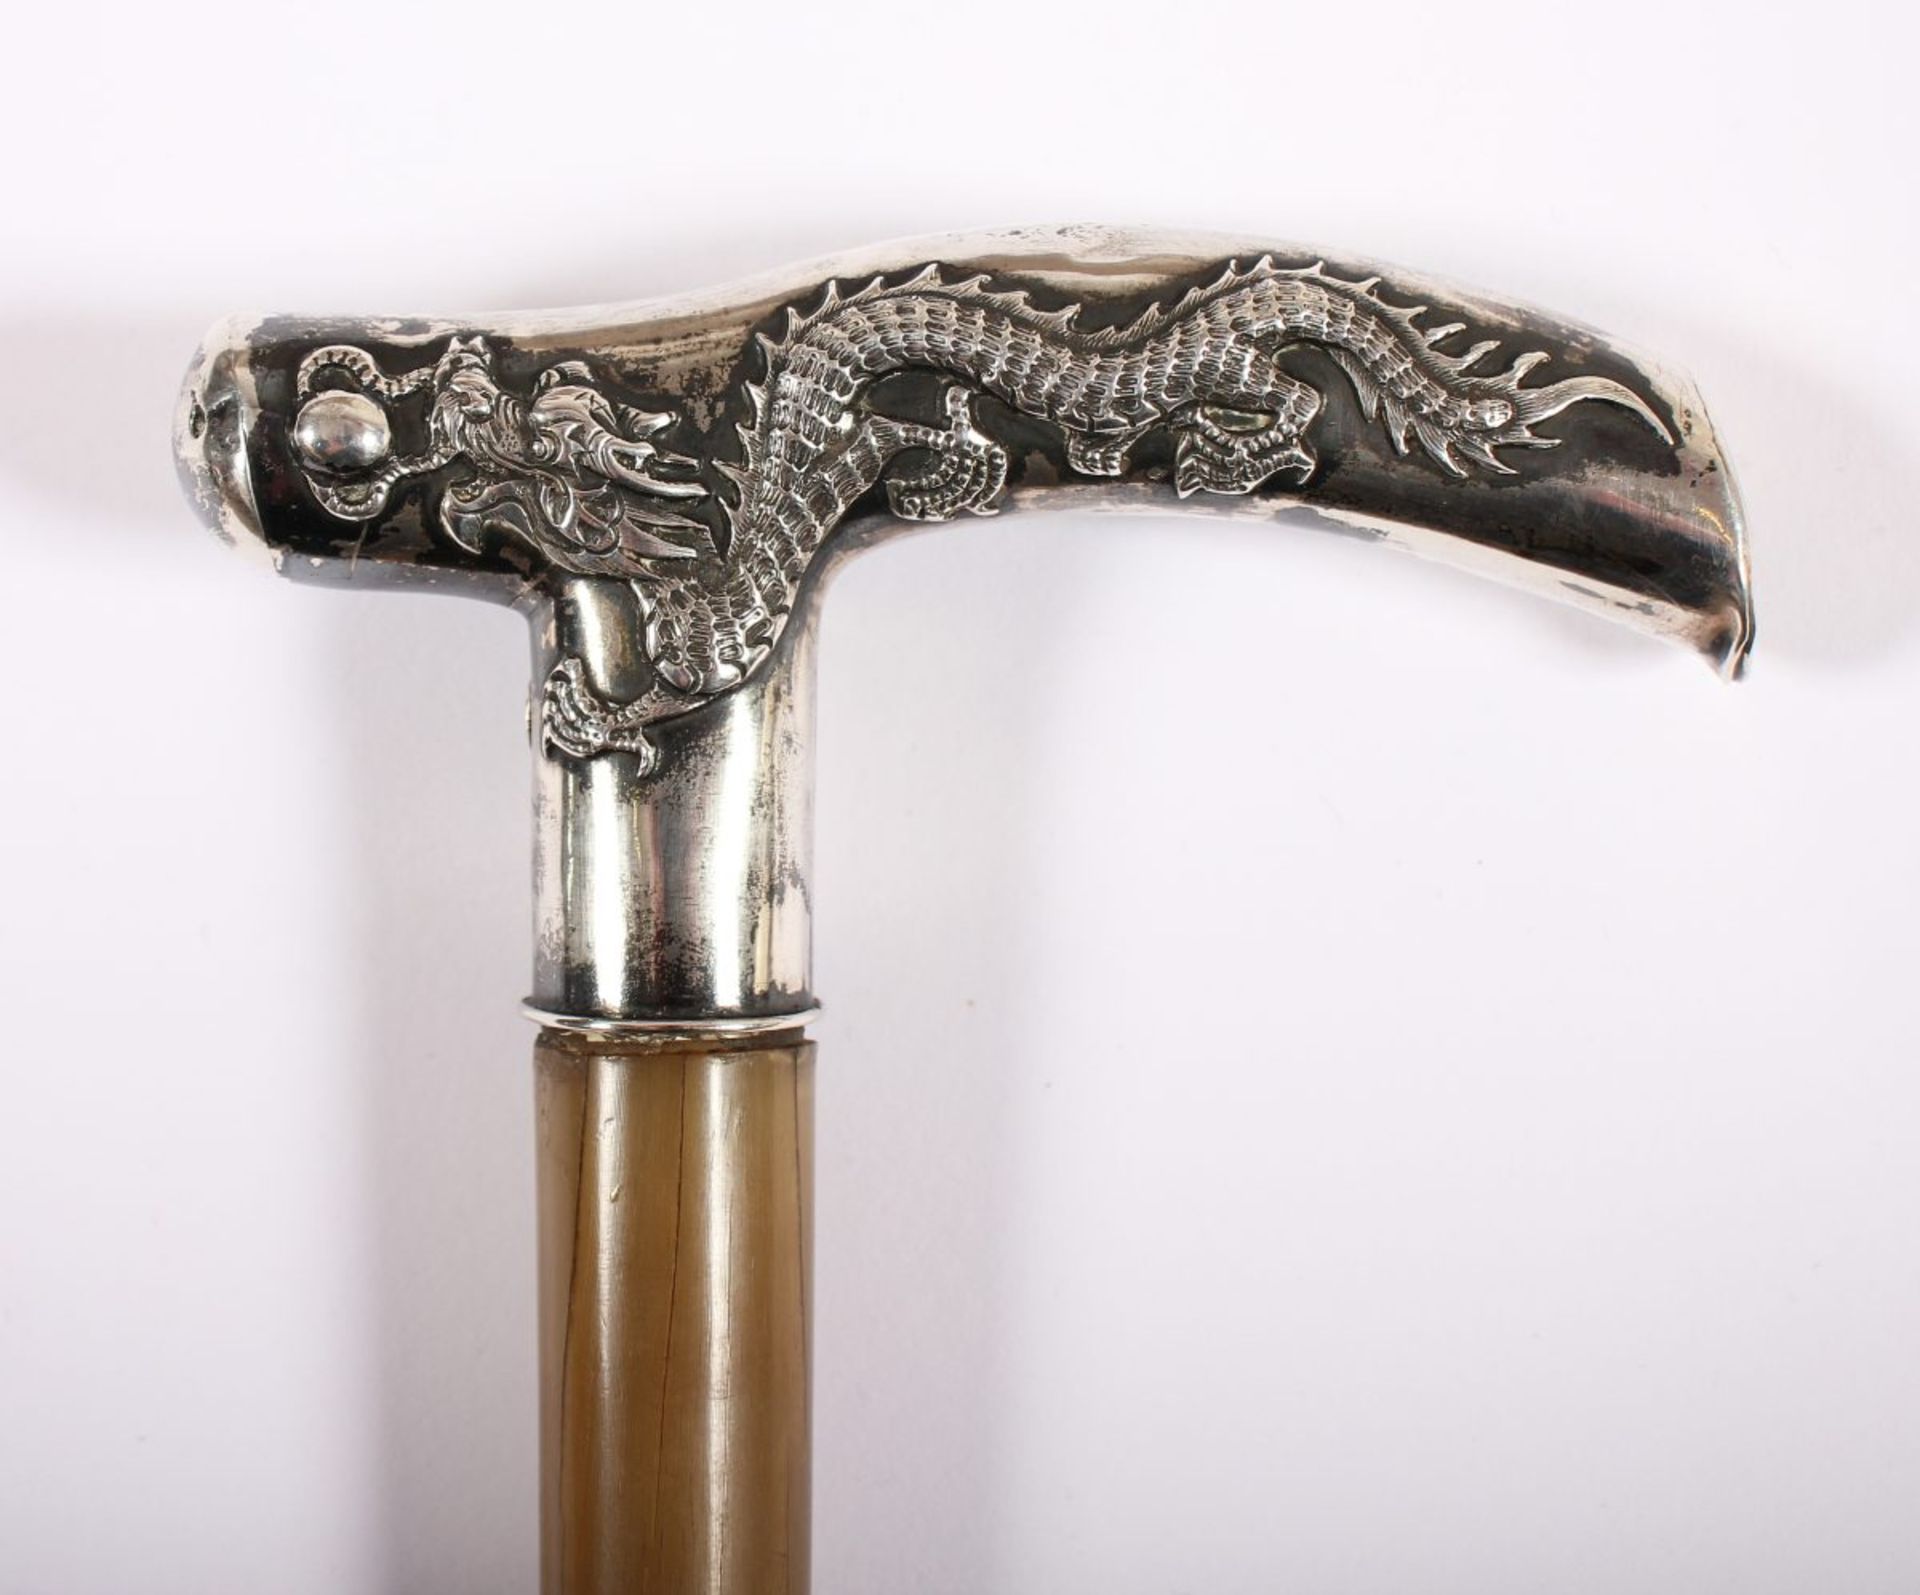 STOCK, silberner Griff mit die Feuerkugel jagendem Drachen im Relief, Marke "C.S.", Schuss Horn, L - Bild 2 aus 4